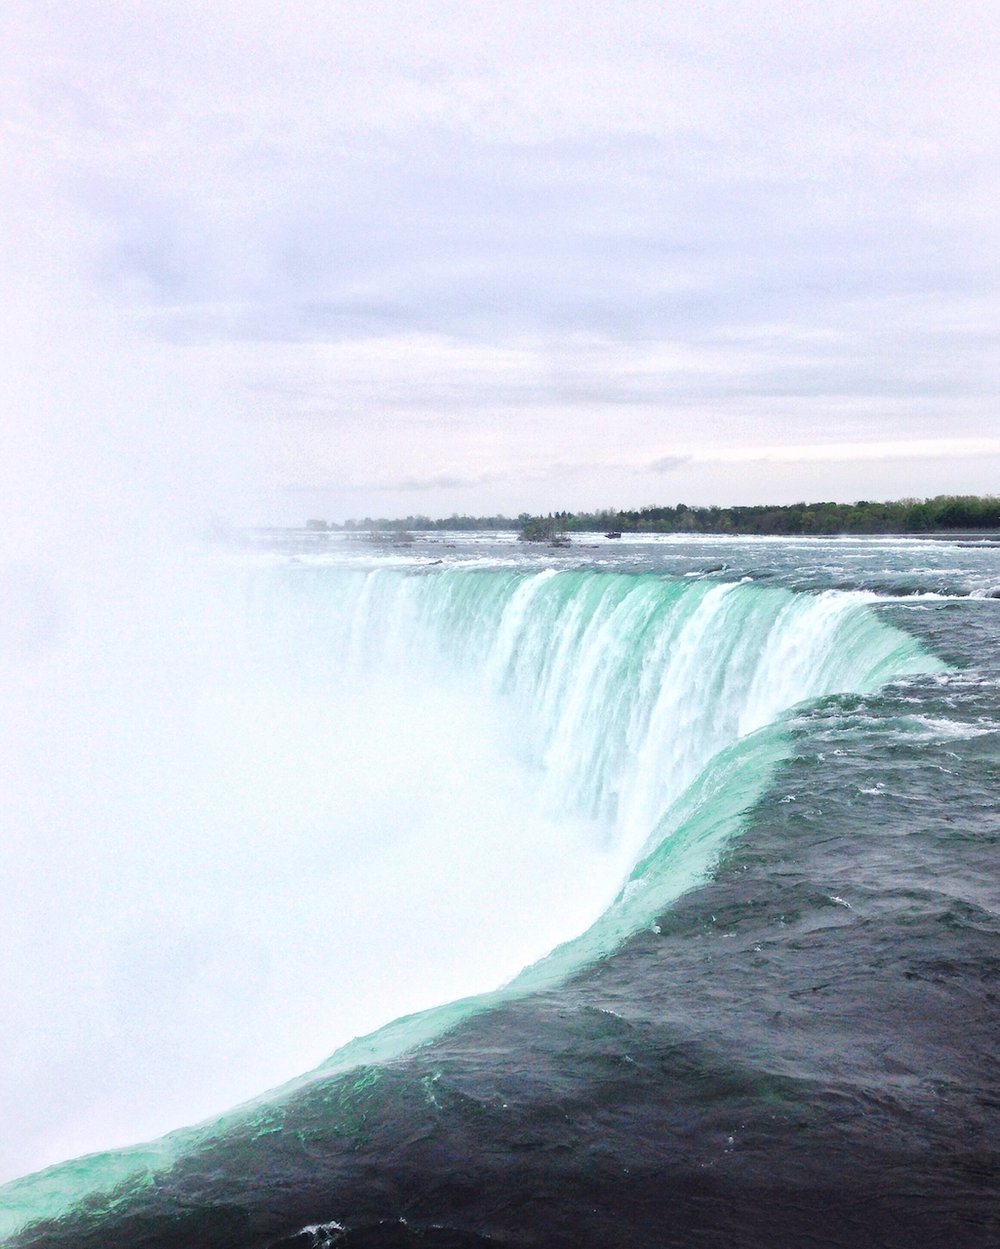 The water flowing at Niagara Falls - Ontario - Canada